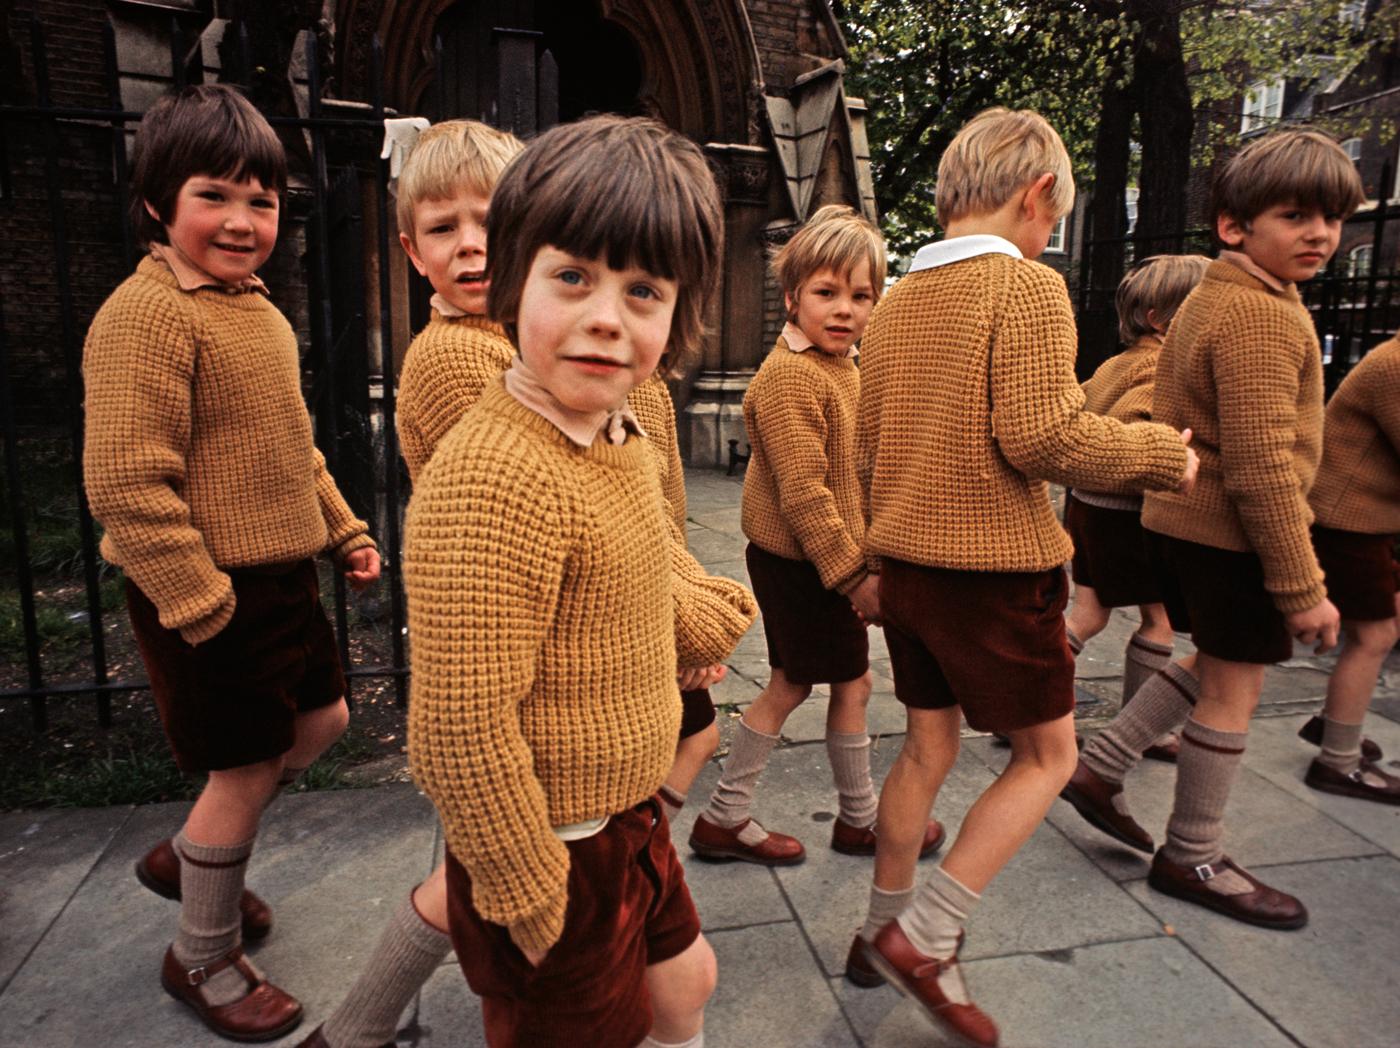                             The British schoolboy look, circa 1972